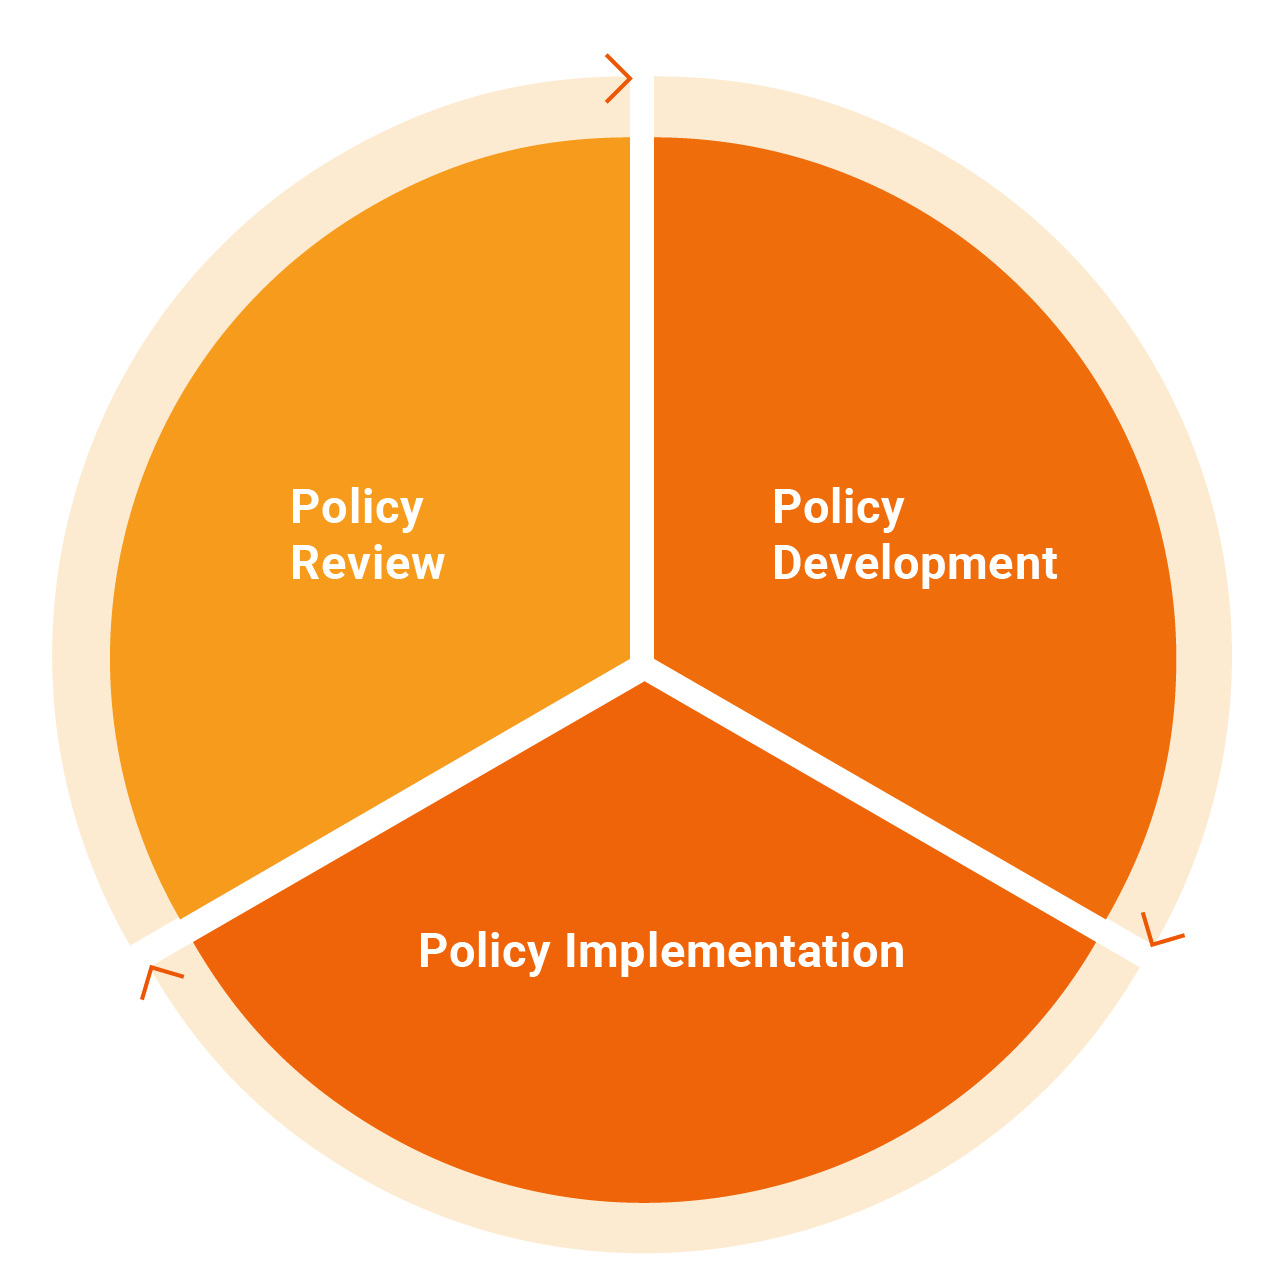 (to) implement policies là gì? Implementing là gì?